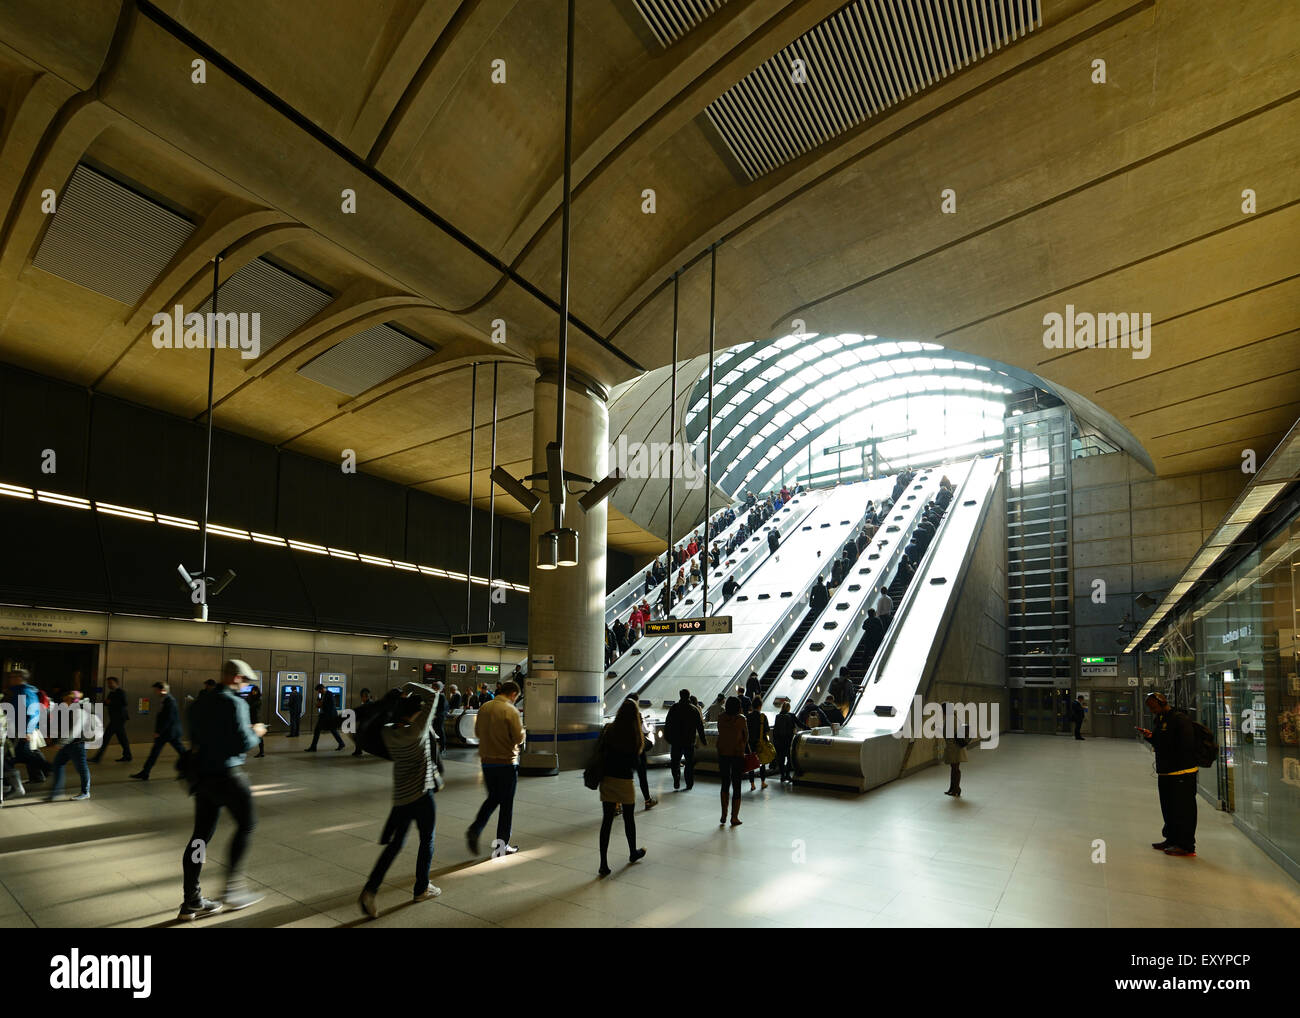 Entrée de la station de métro Canary Wharf, London, UK. Banque D'Images